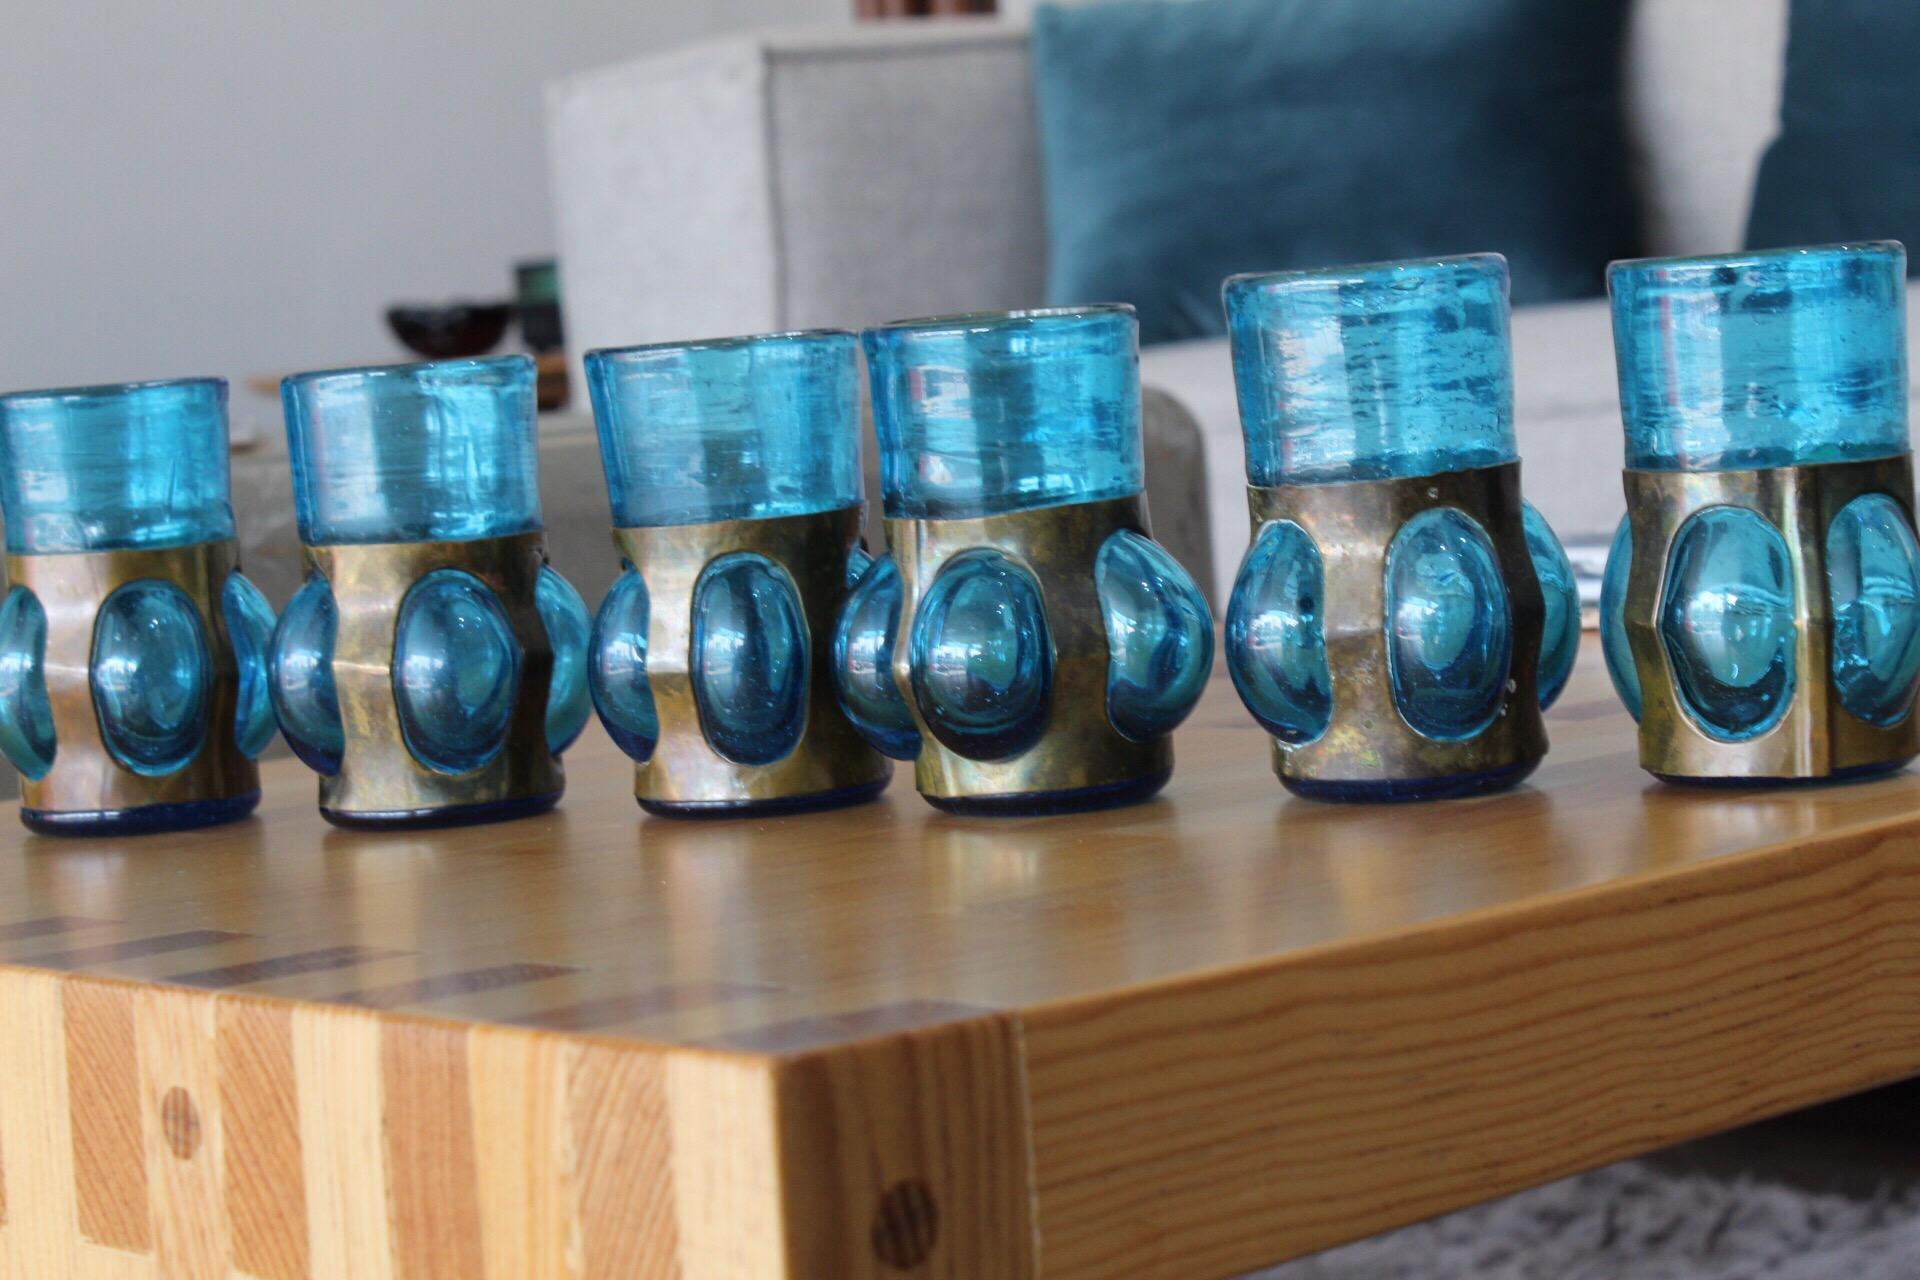 Designed by Felipe Derflingher for Feder's, set of 6 shot glasses in cobalt color made of blown glass